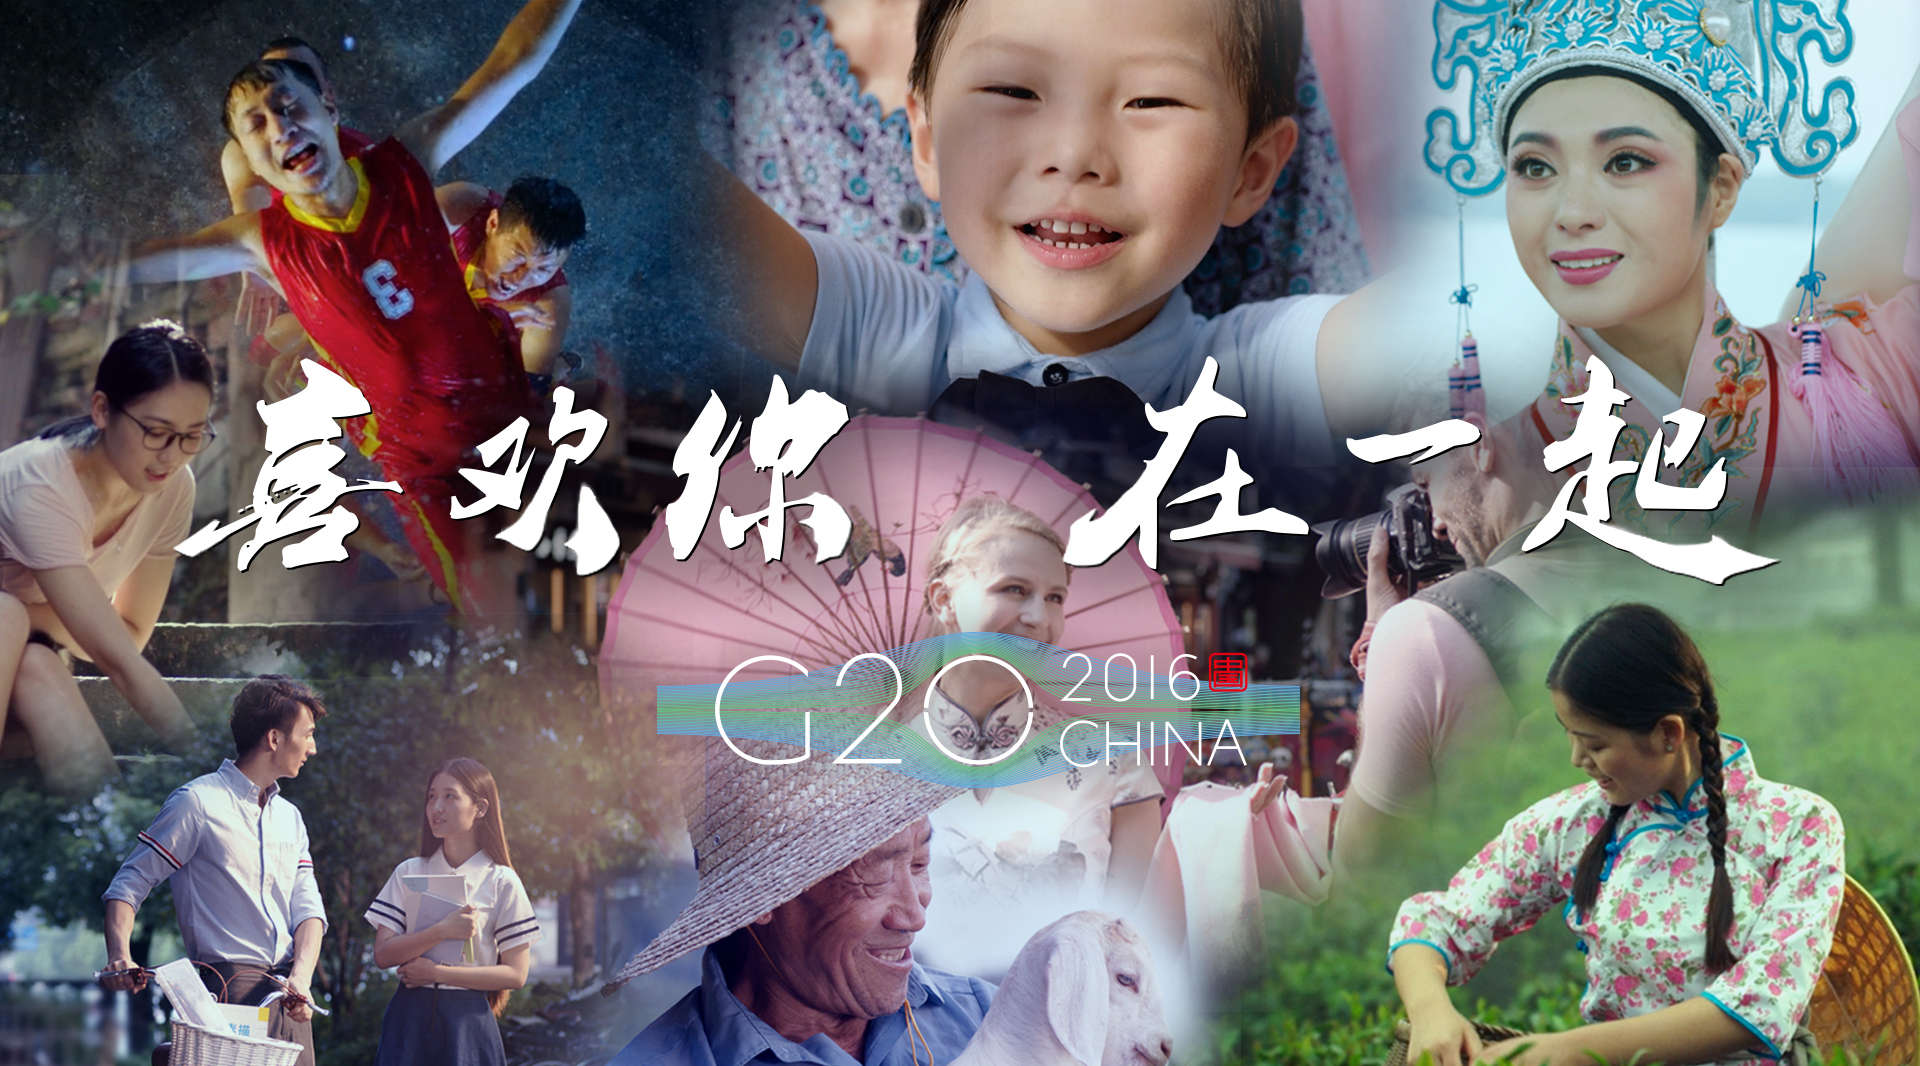 G20杭州峰会宣传片《喜欢你在一起》导演版